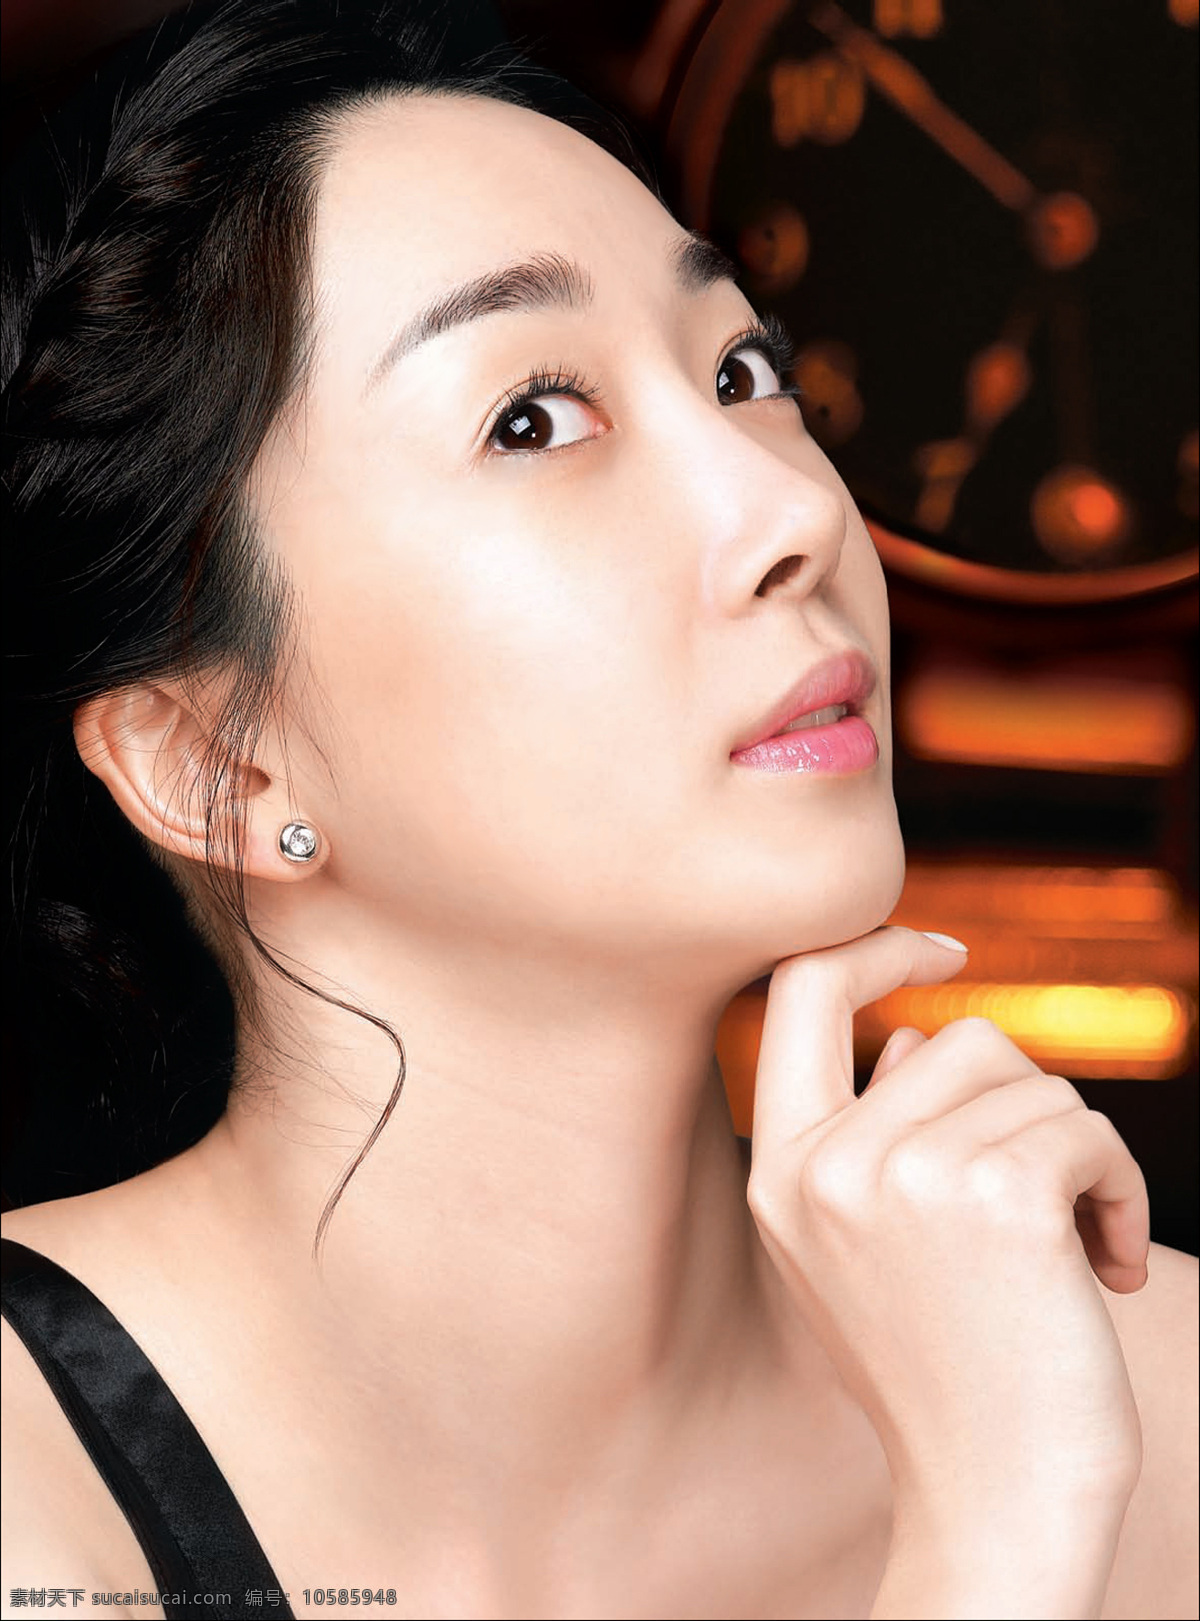 韩国 美女明星 侧面 人物图库 人物摄影 摄影图库